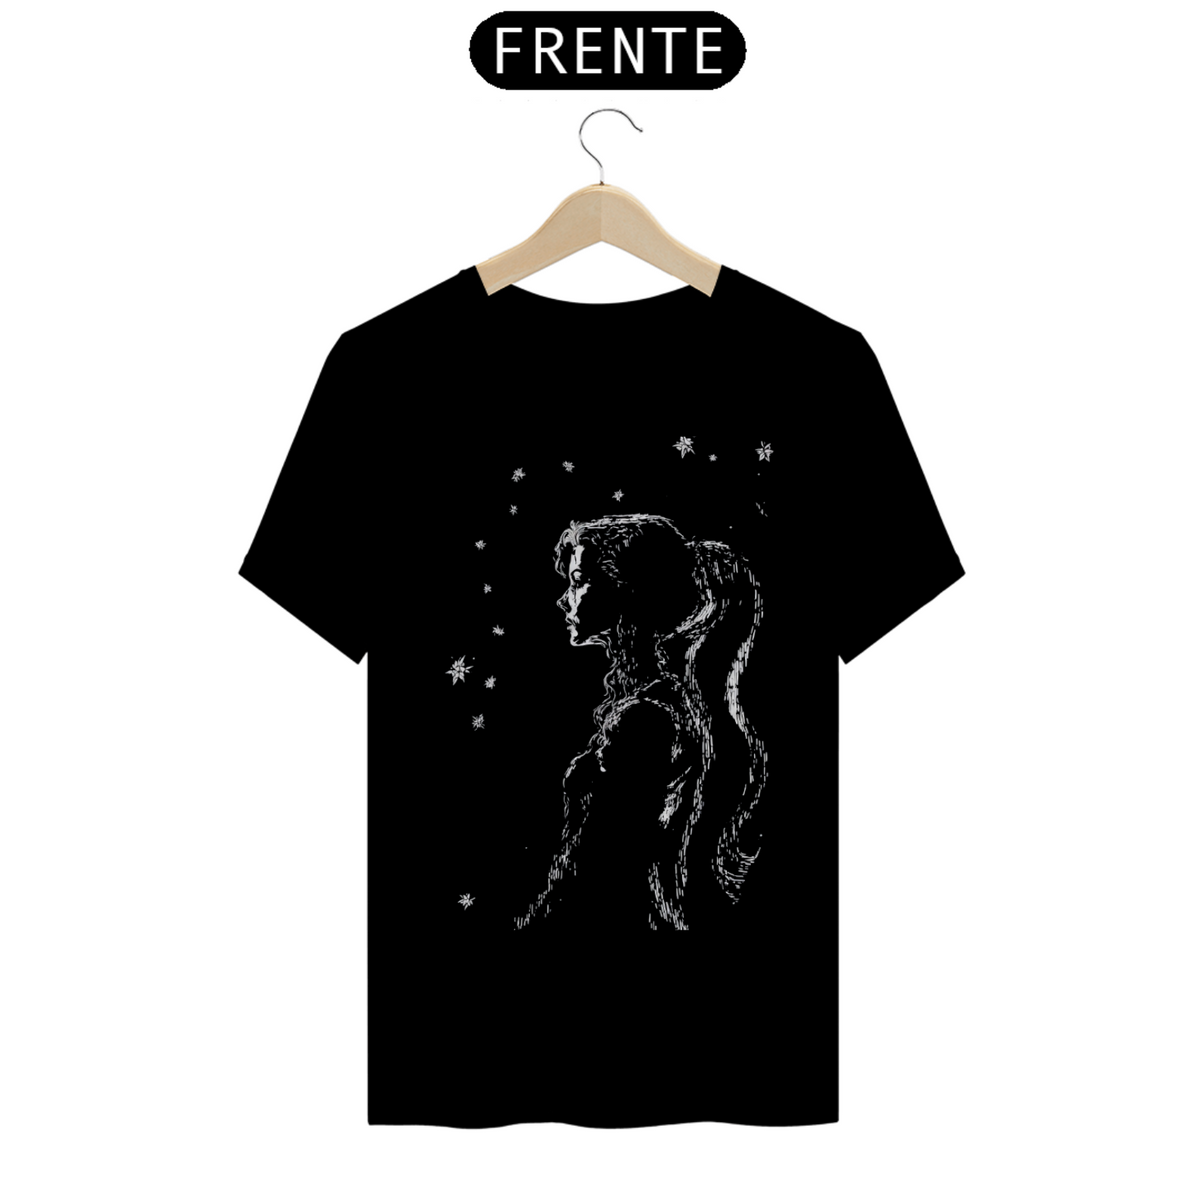 Nome do produto: Camiseta menina no céu estrelado